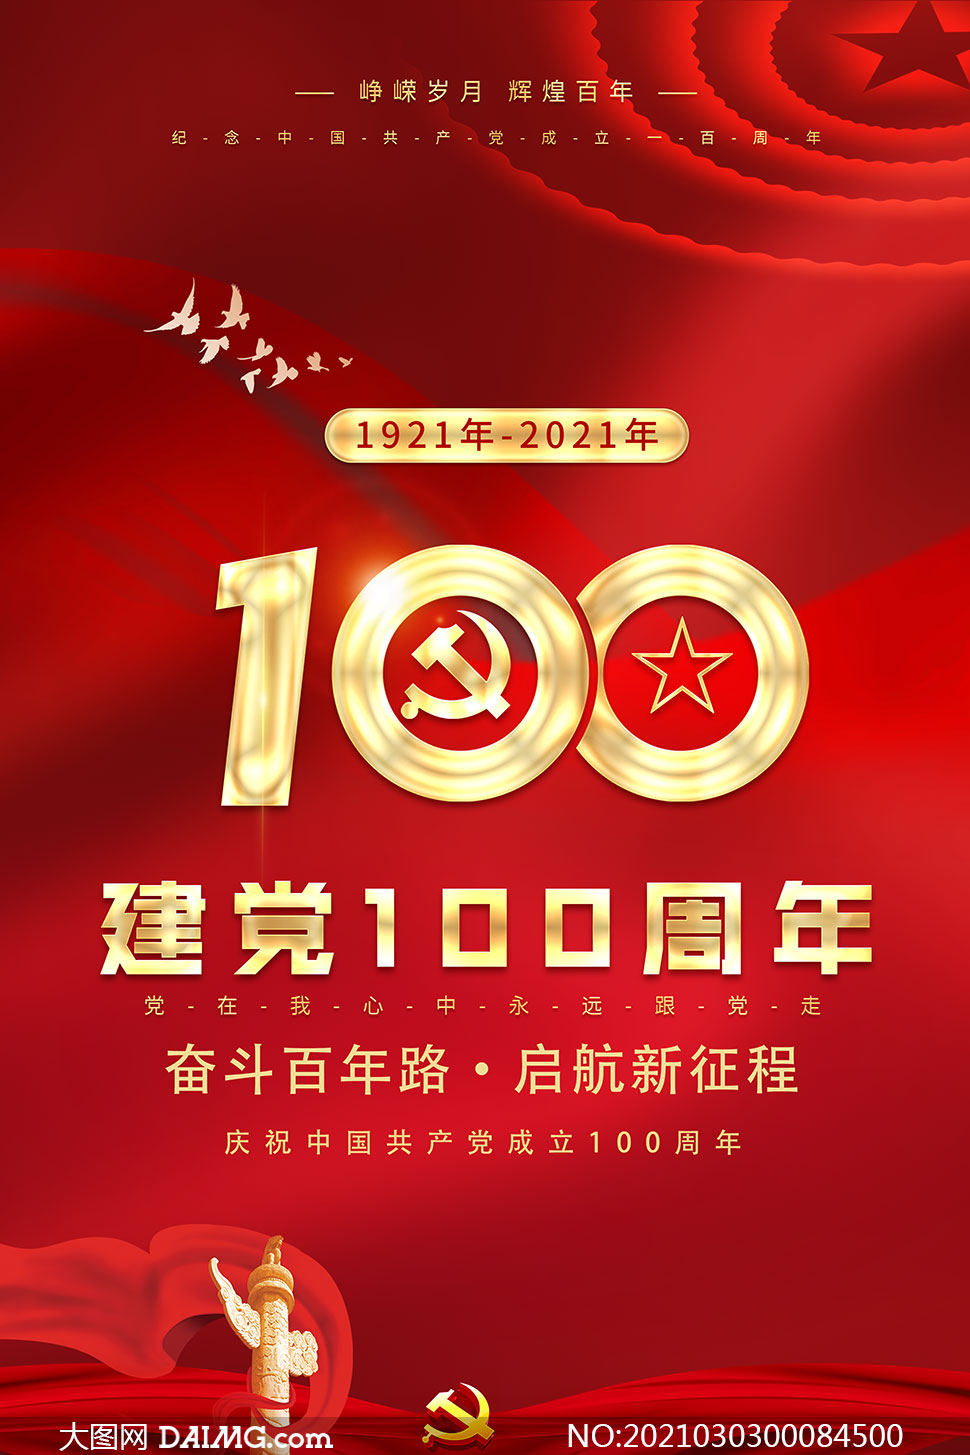 建党节100周年活动宣传单模板psd素材